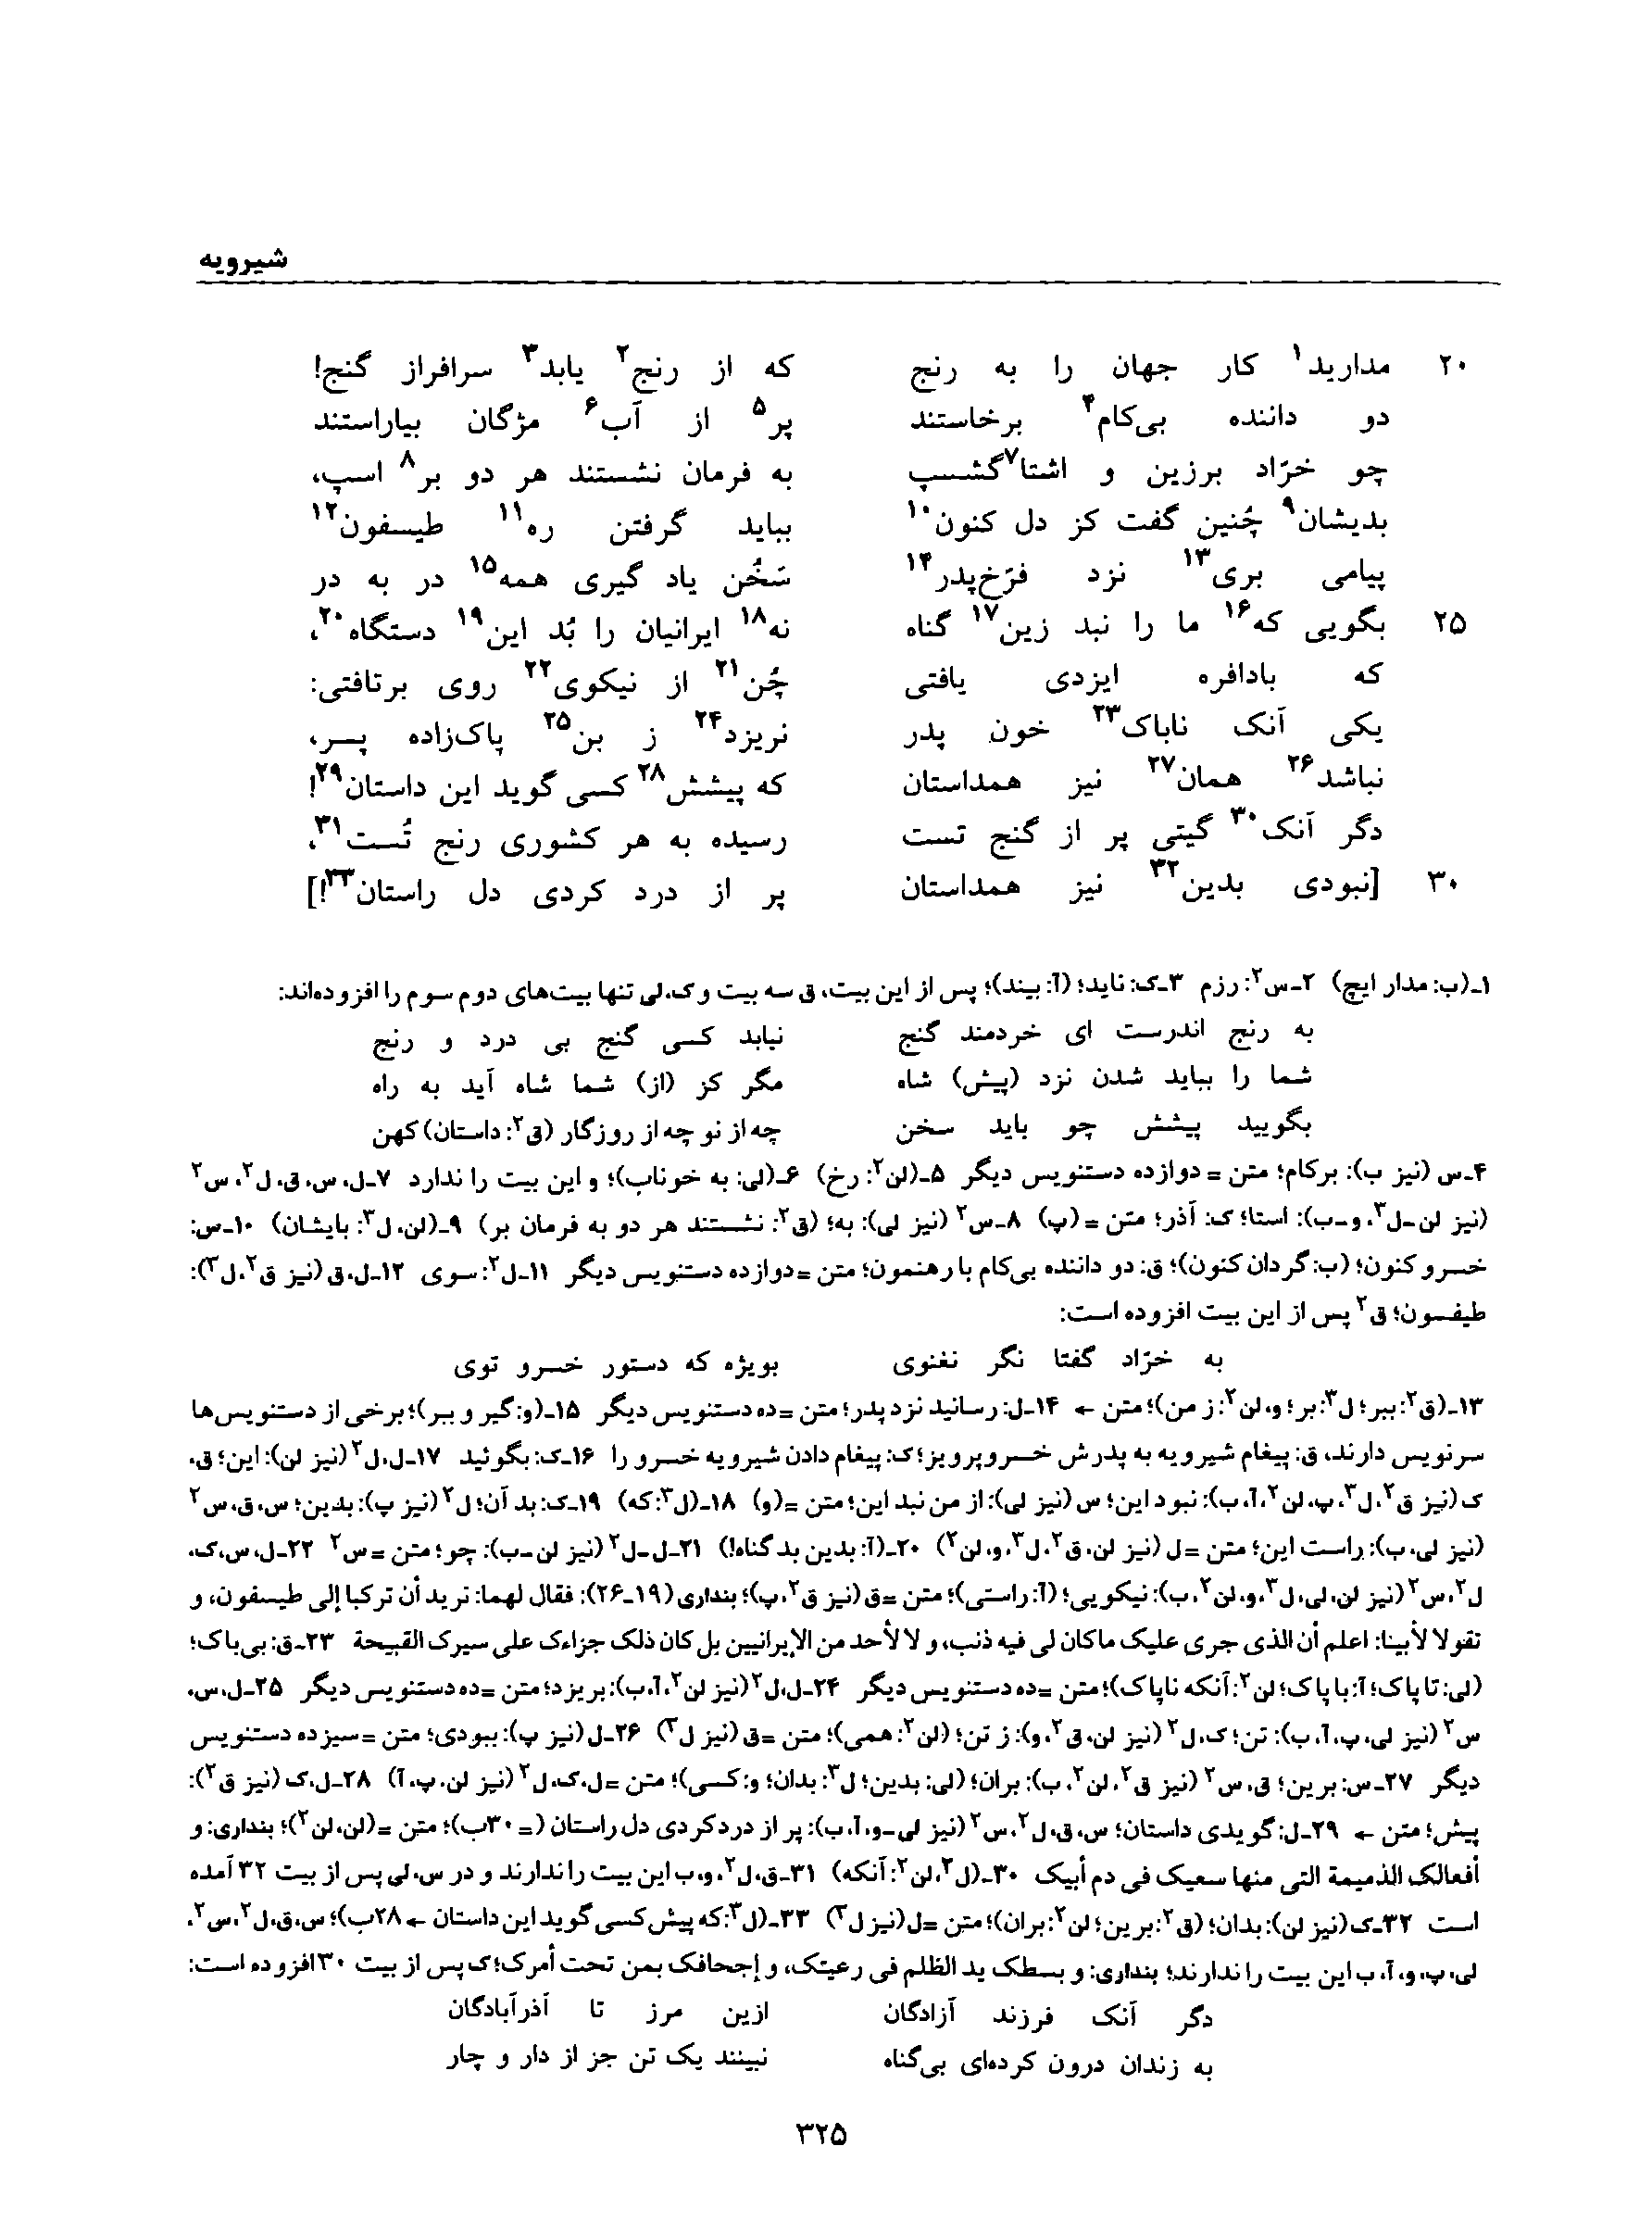 vol. 8, p. 325